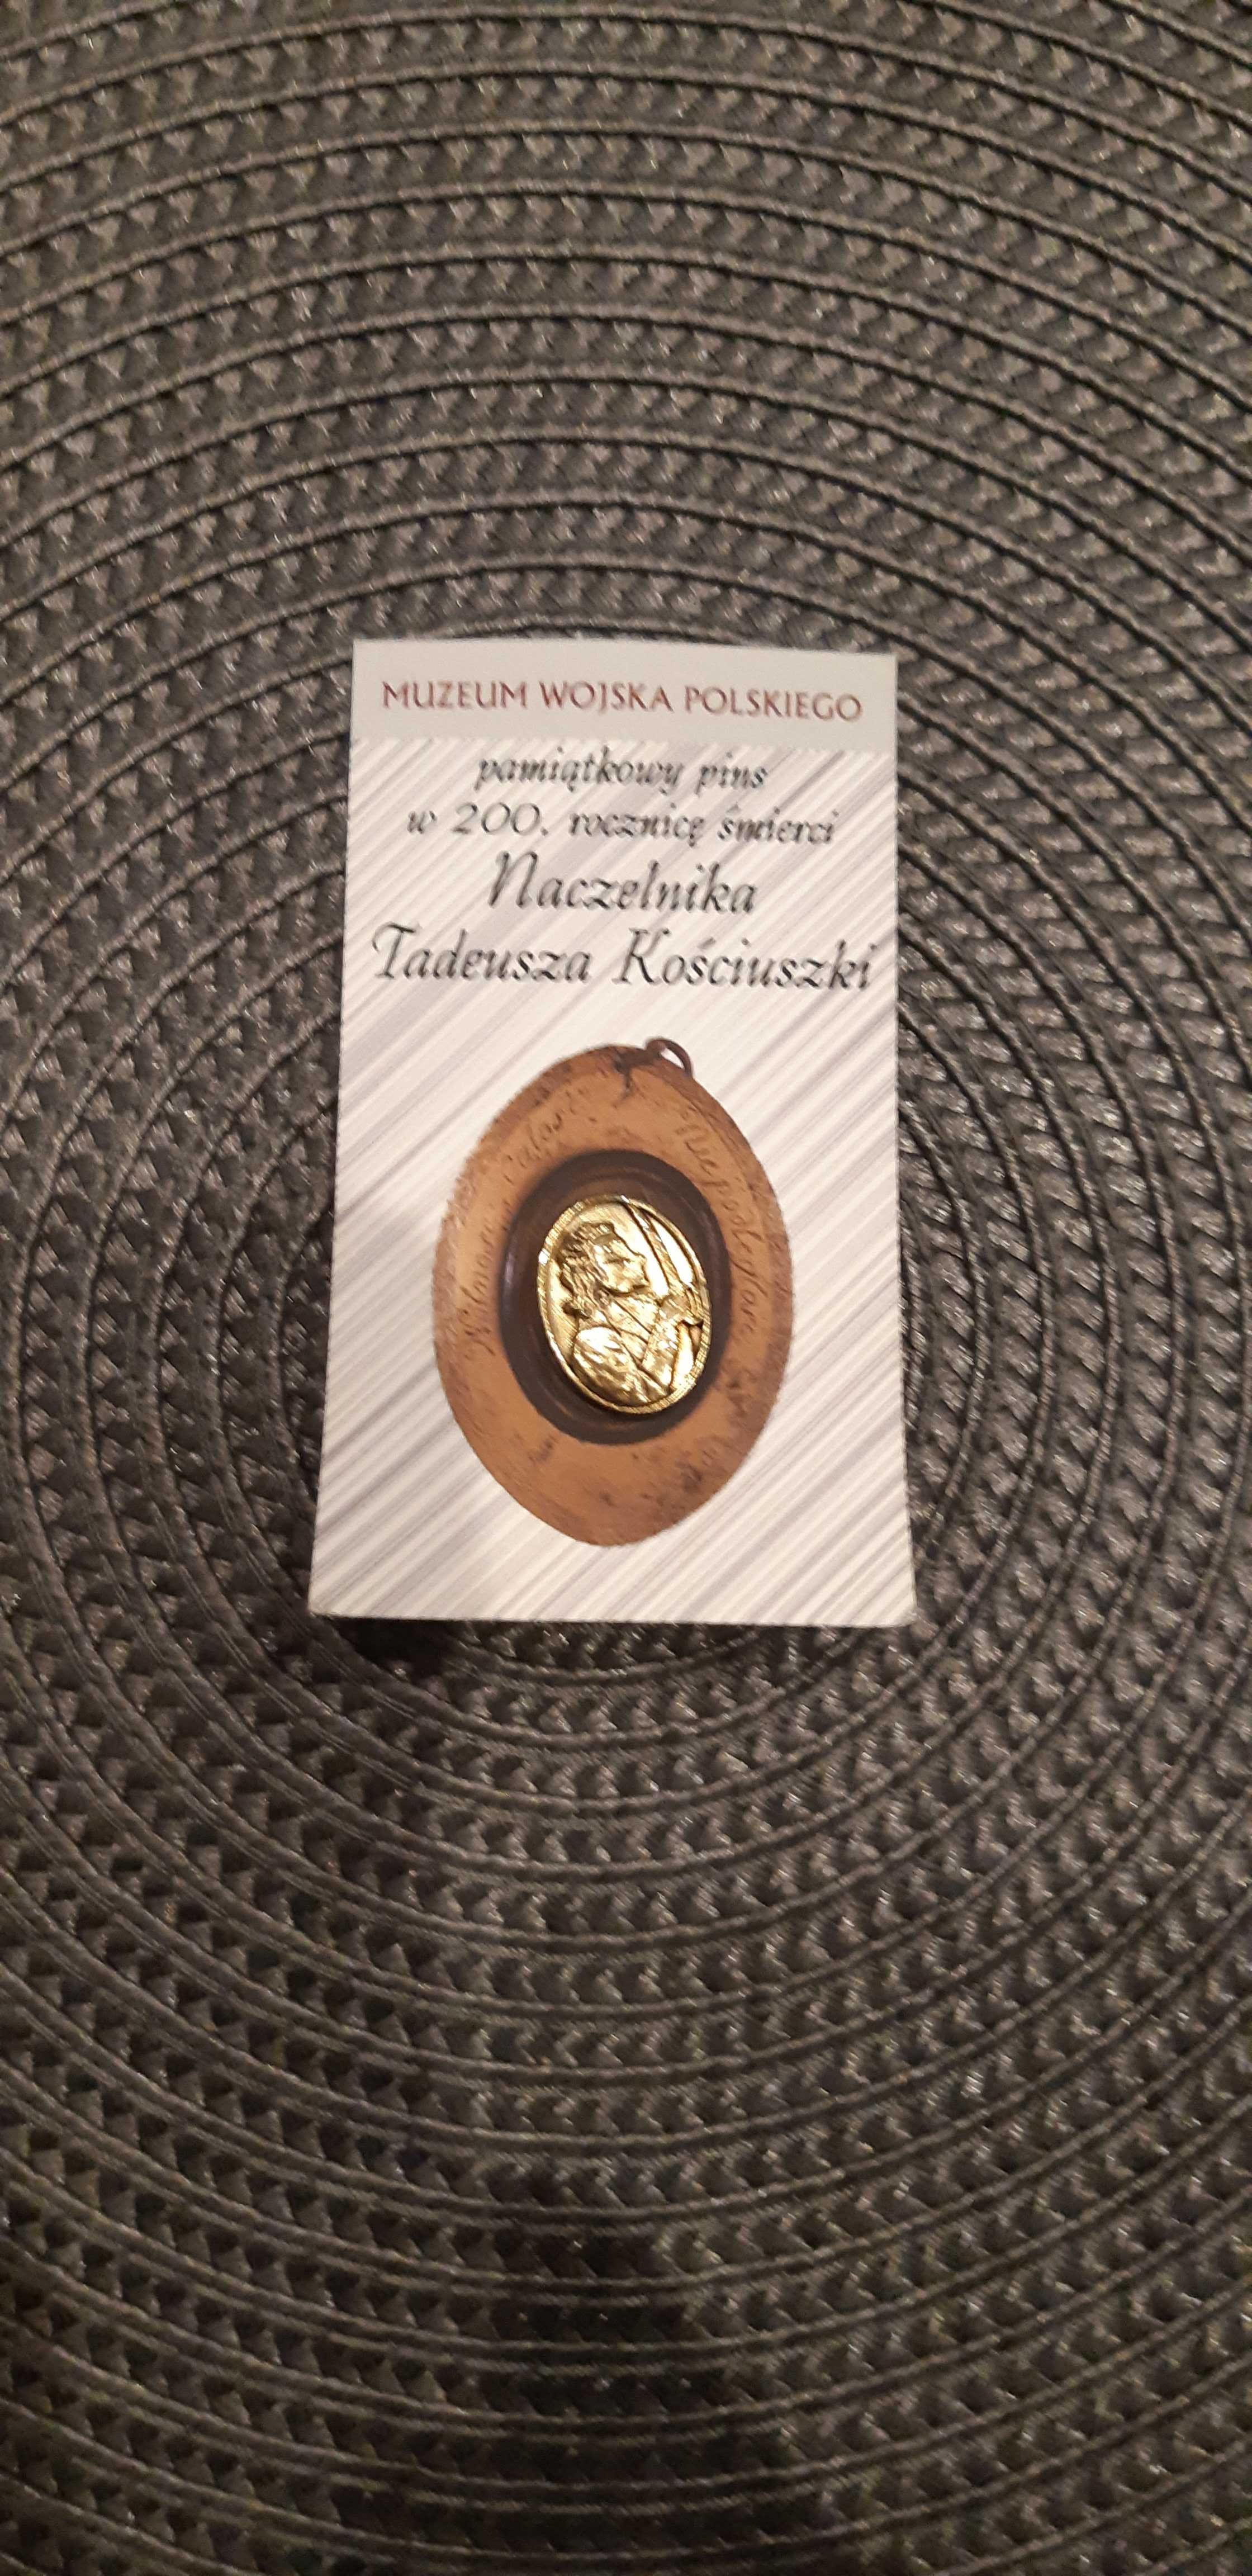 pins 200 rocznica śmierci naczelnika Tadeusza Kościuszki